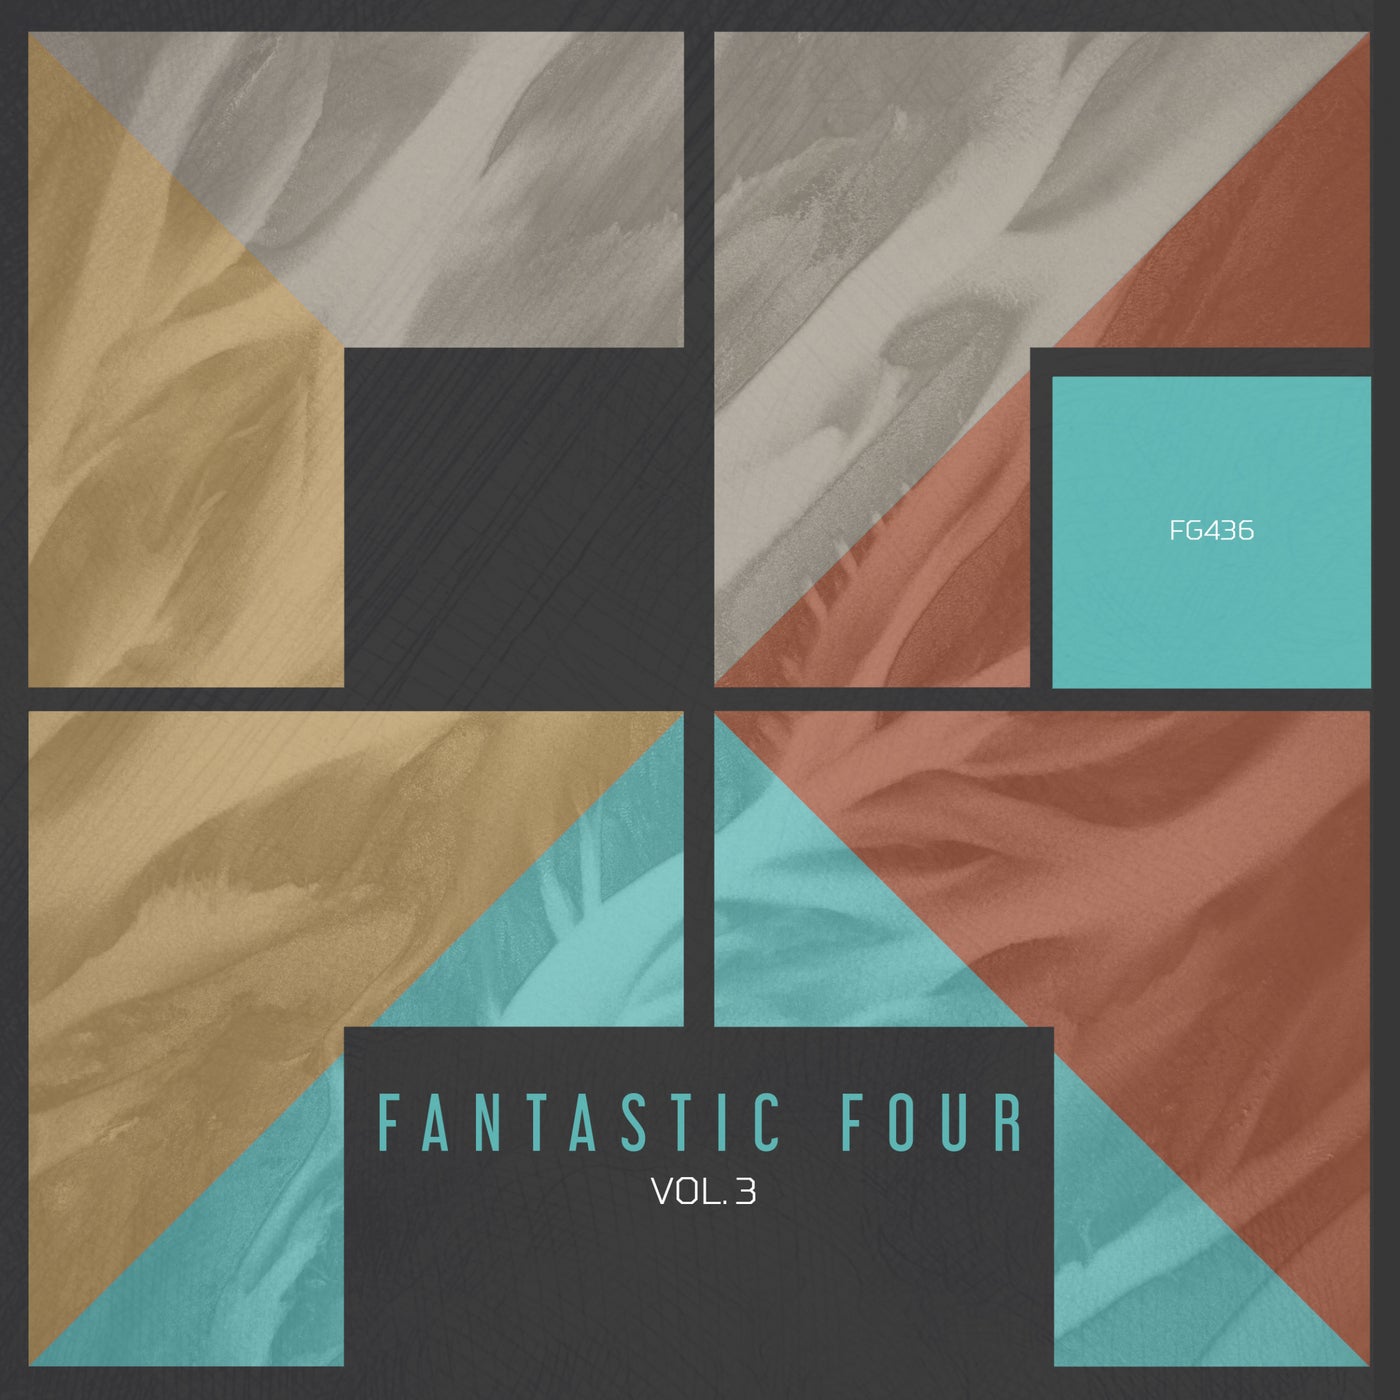 VA - Fantastic Four vol.3 [FG436]